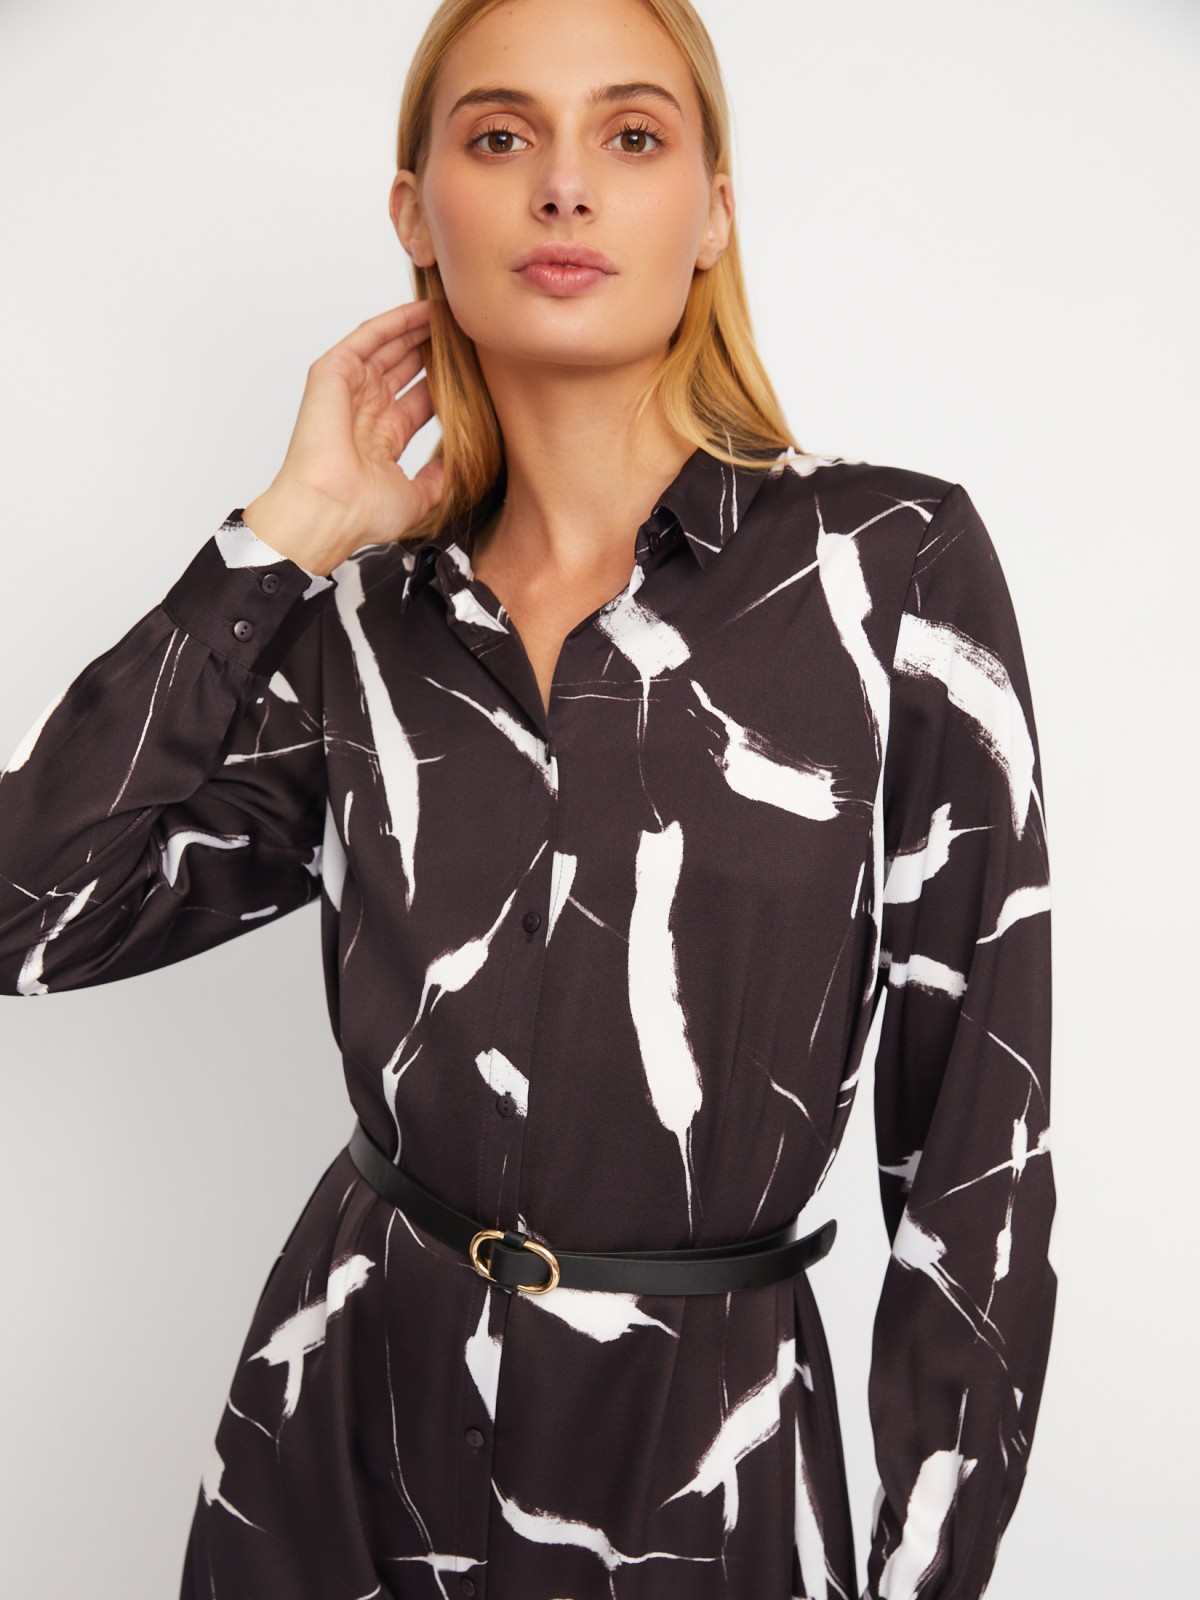 Атласное платье-рубашка с воротником и акцентном на талии zolla 02411827Y353, цвет коричневый, размер XS - фото 4